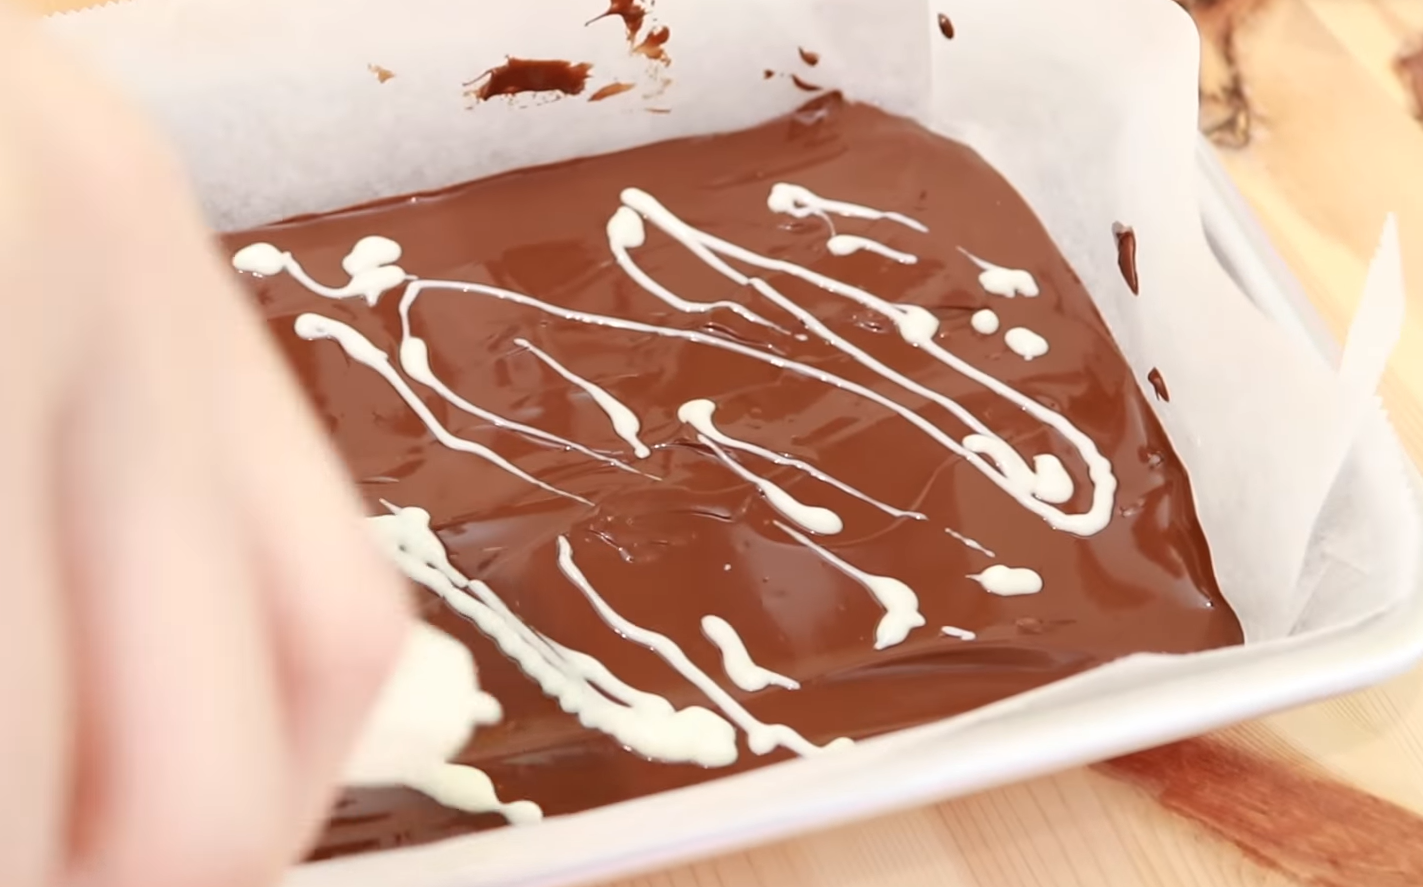 チョコが完全に溶けたら、クッキングシートを敷いたバットなどに流し入れ、ホワイトチョコペンで模様を付ける。